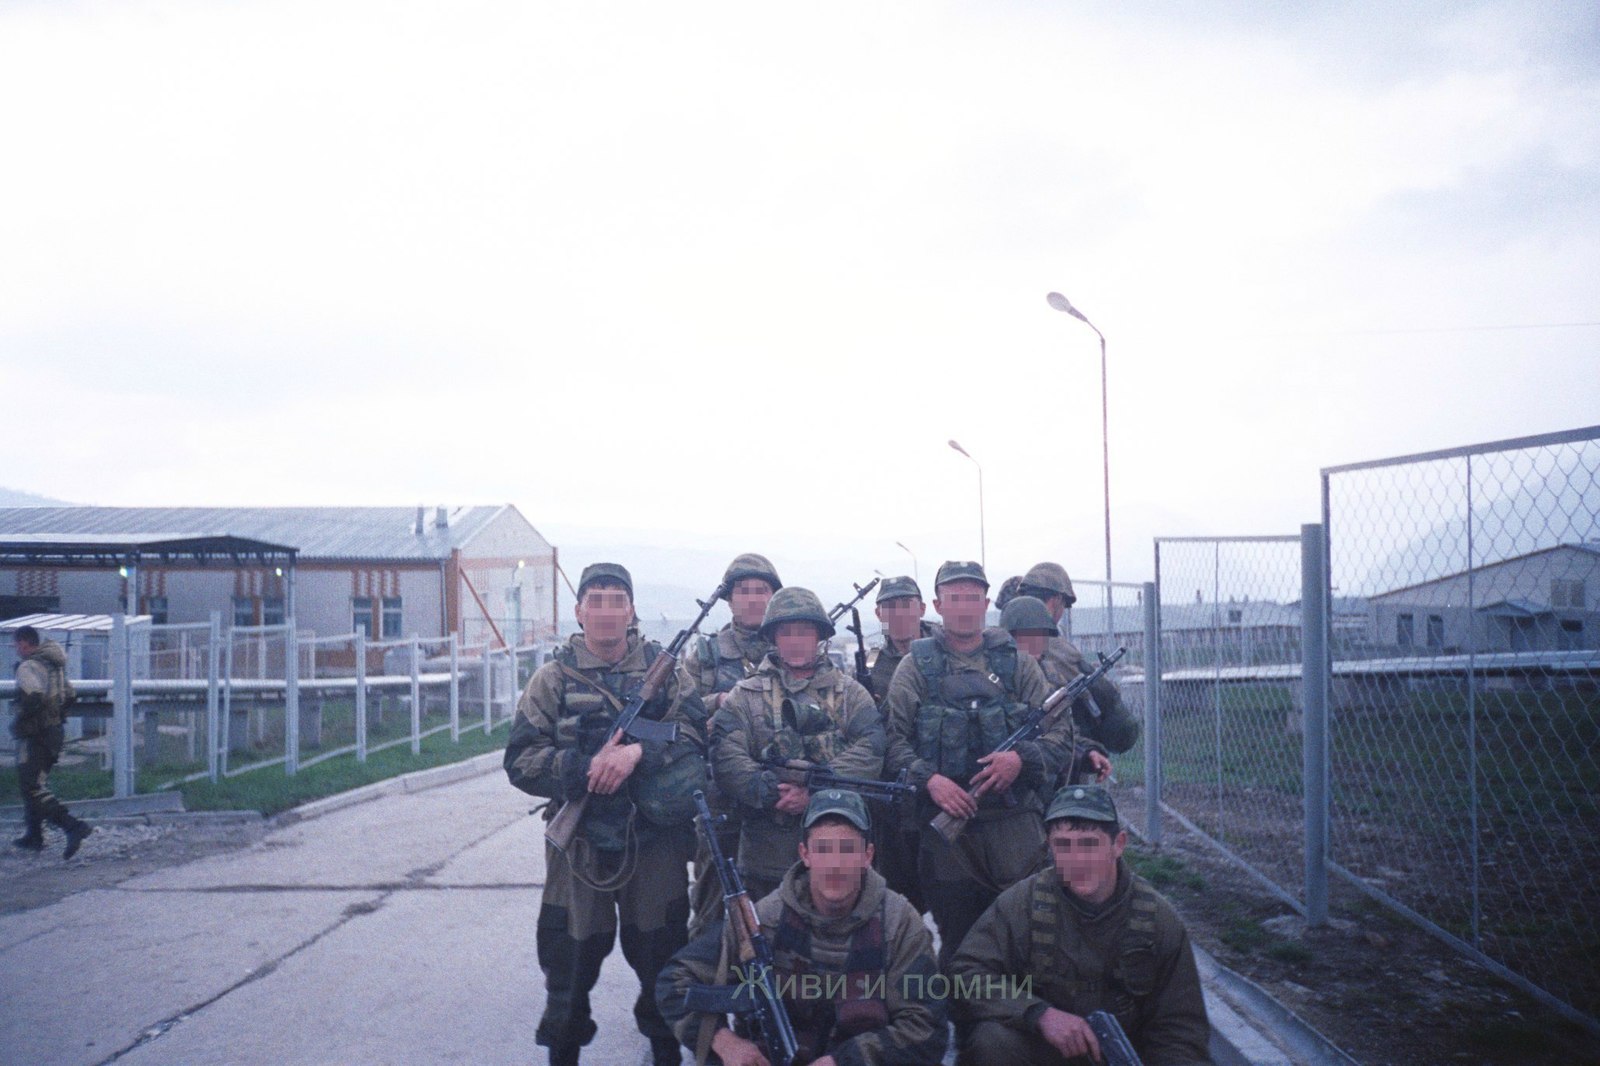 Борзой 291 полк чеченская республика